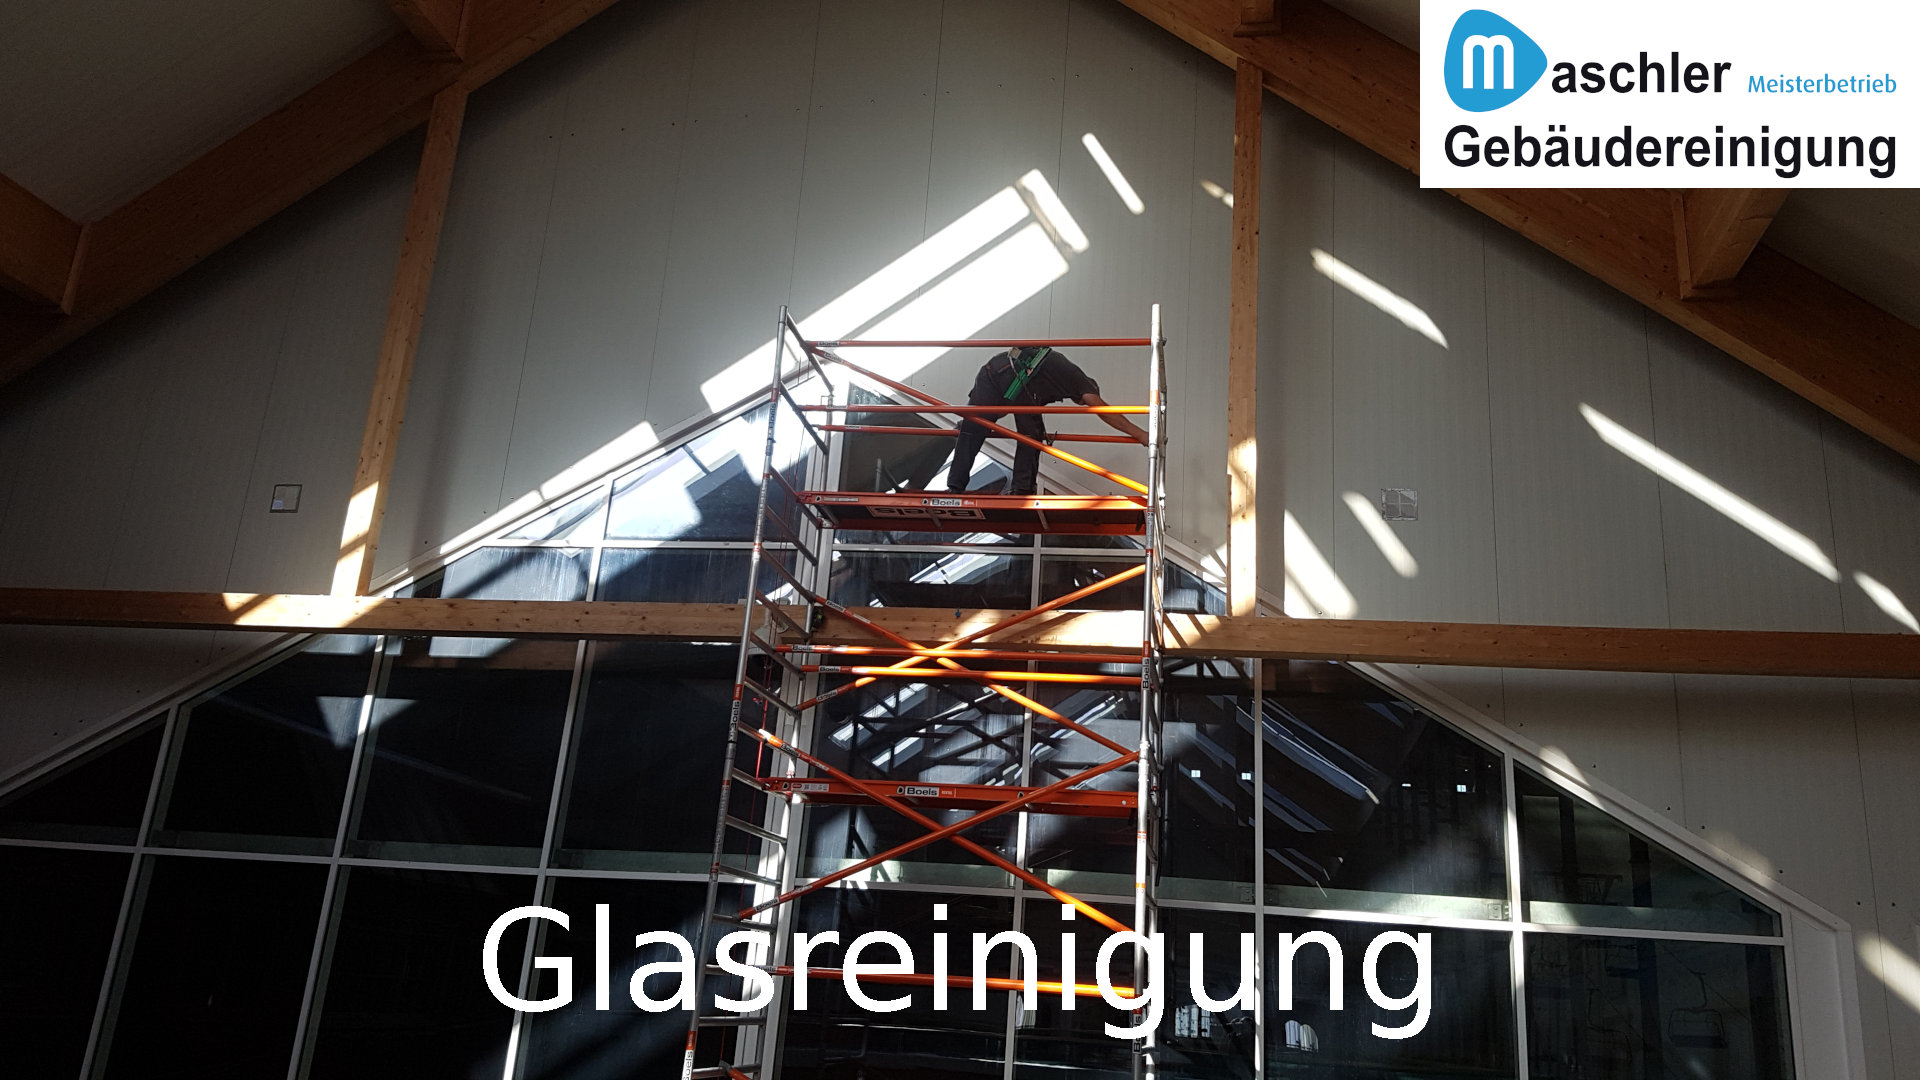 Glasreinigung - Gebäudereinigung Maschler Schwerin